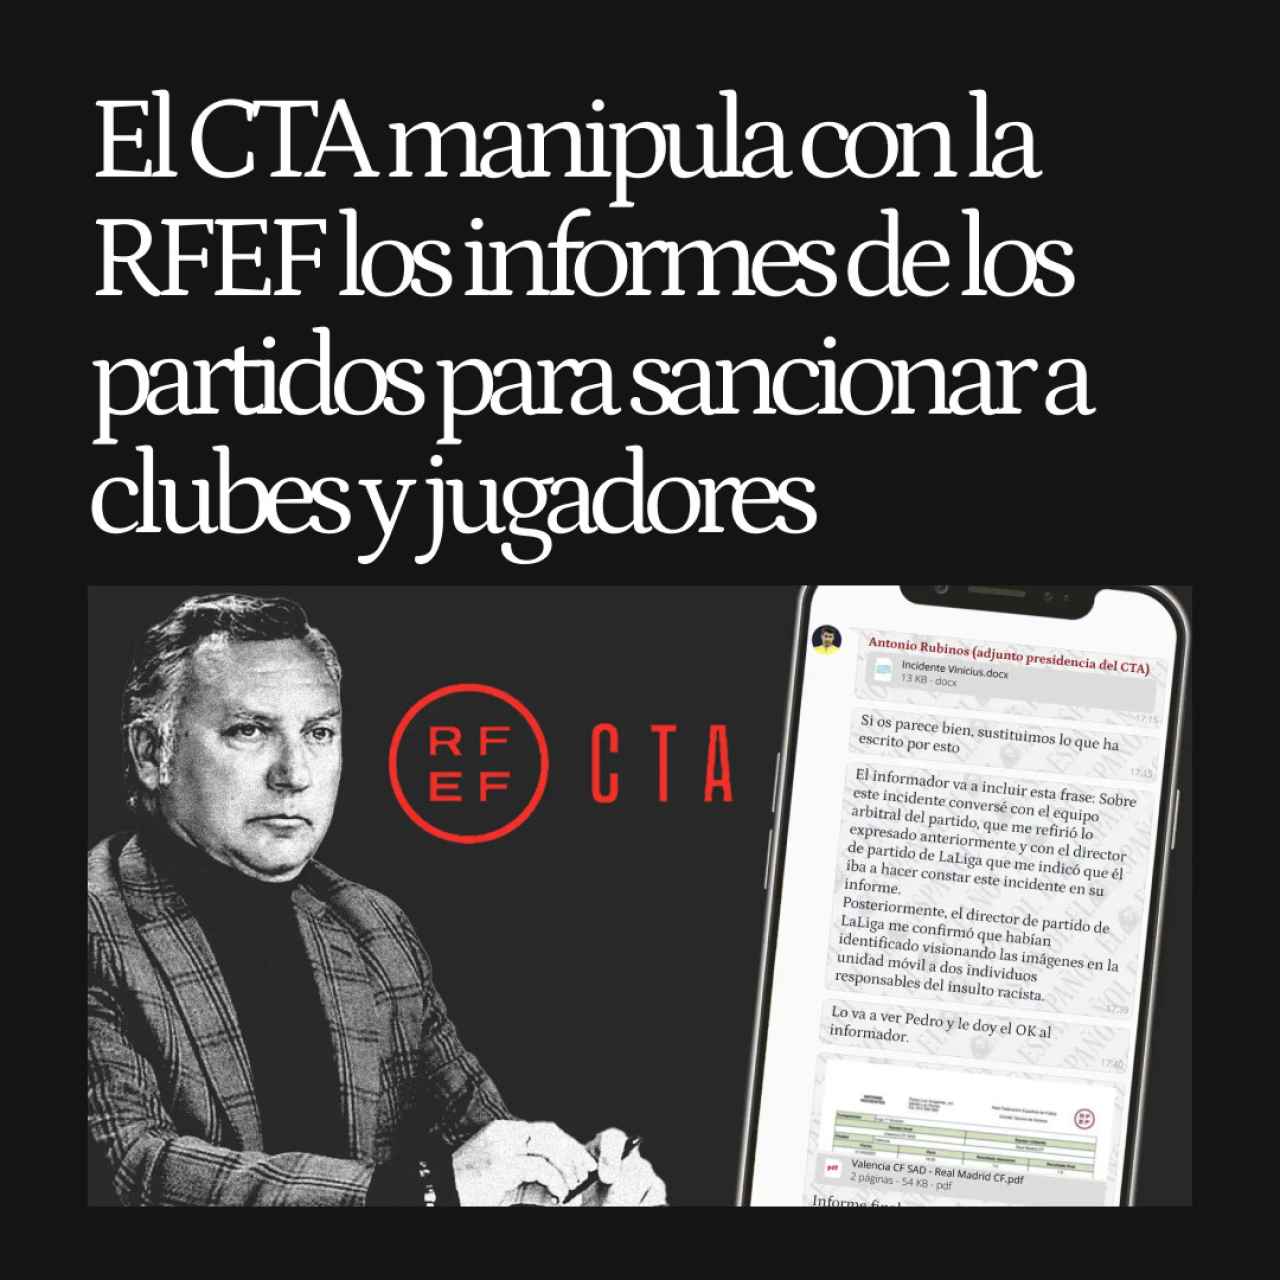 El CTA manipula con la RFEF los informes de los partidos para sancionar a clubes y jugadores